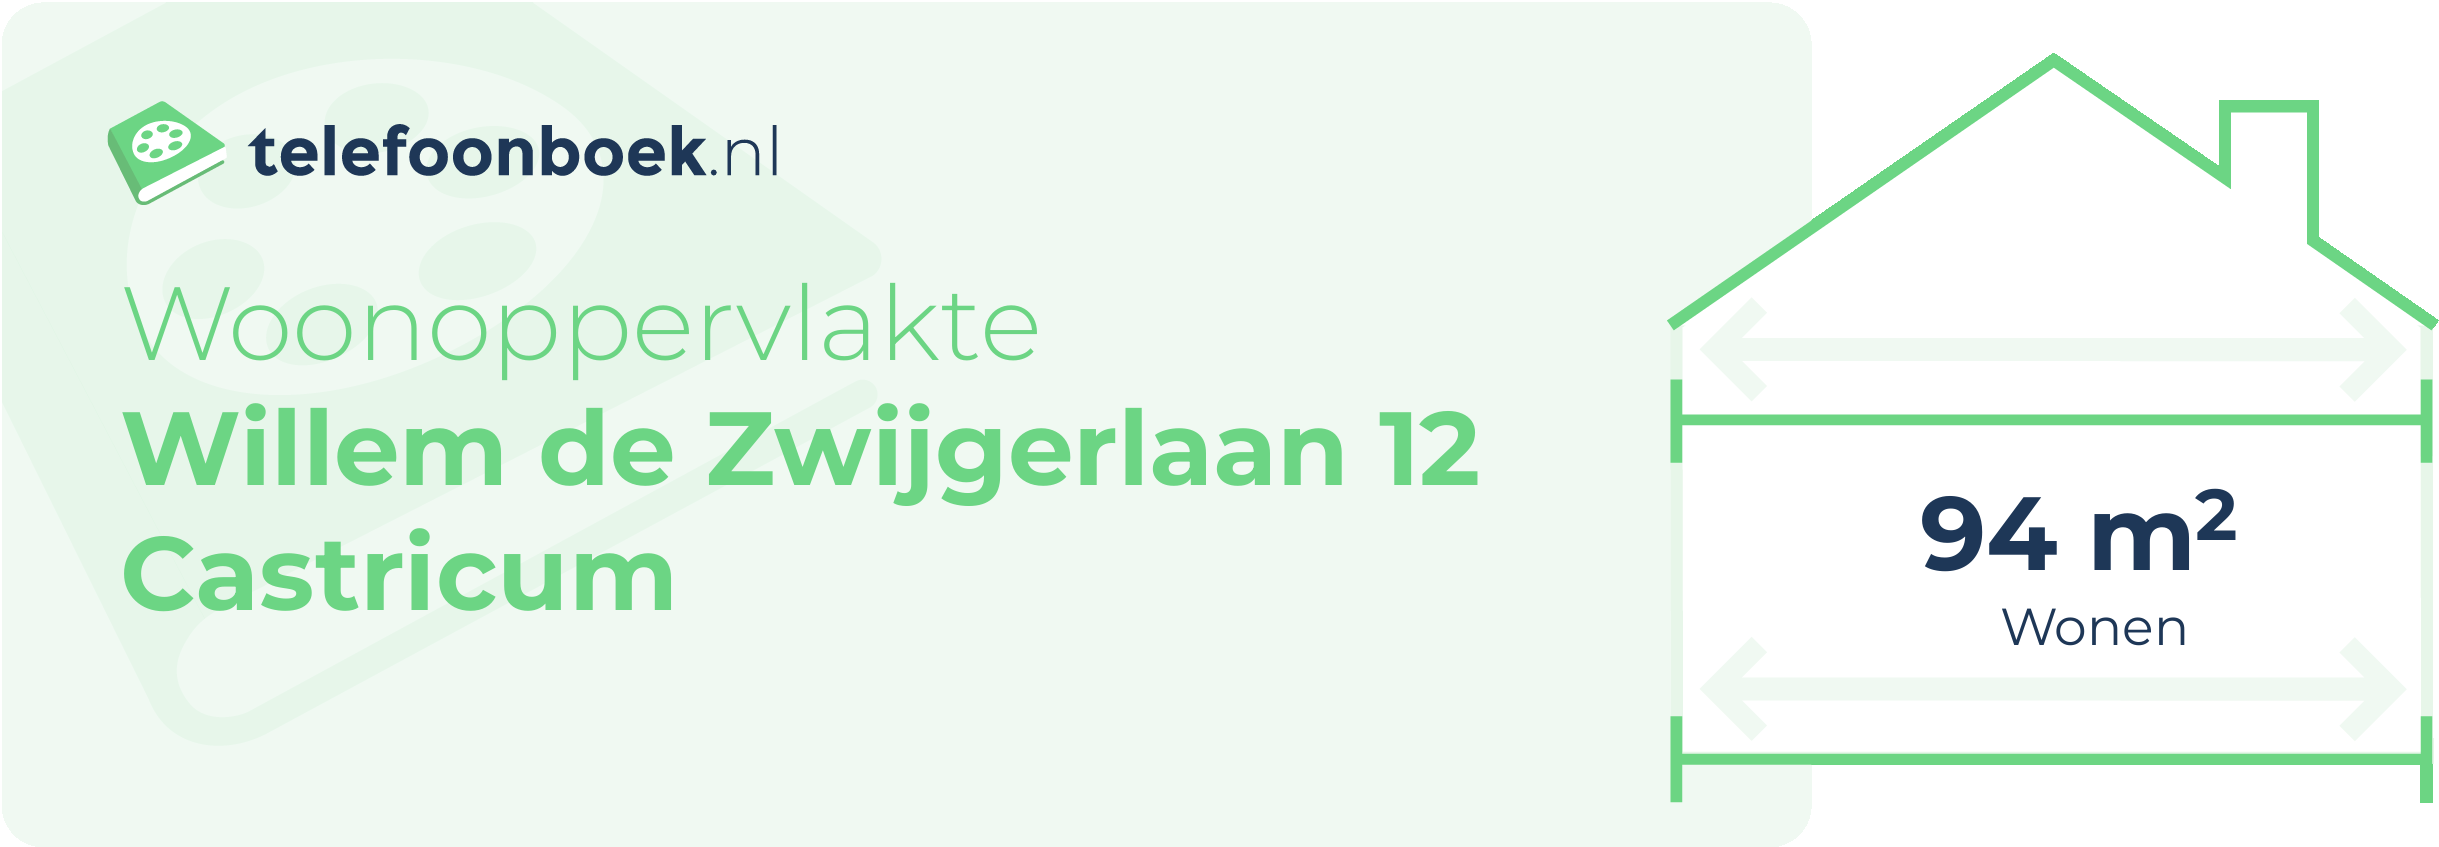 Woonoppervlakte Willem De Zwijgerlaan 12 Castricum